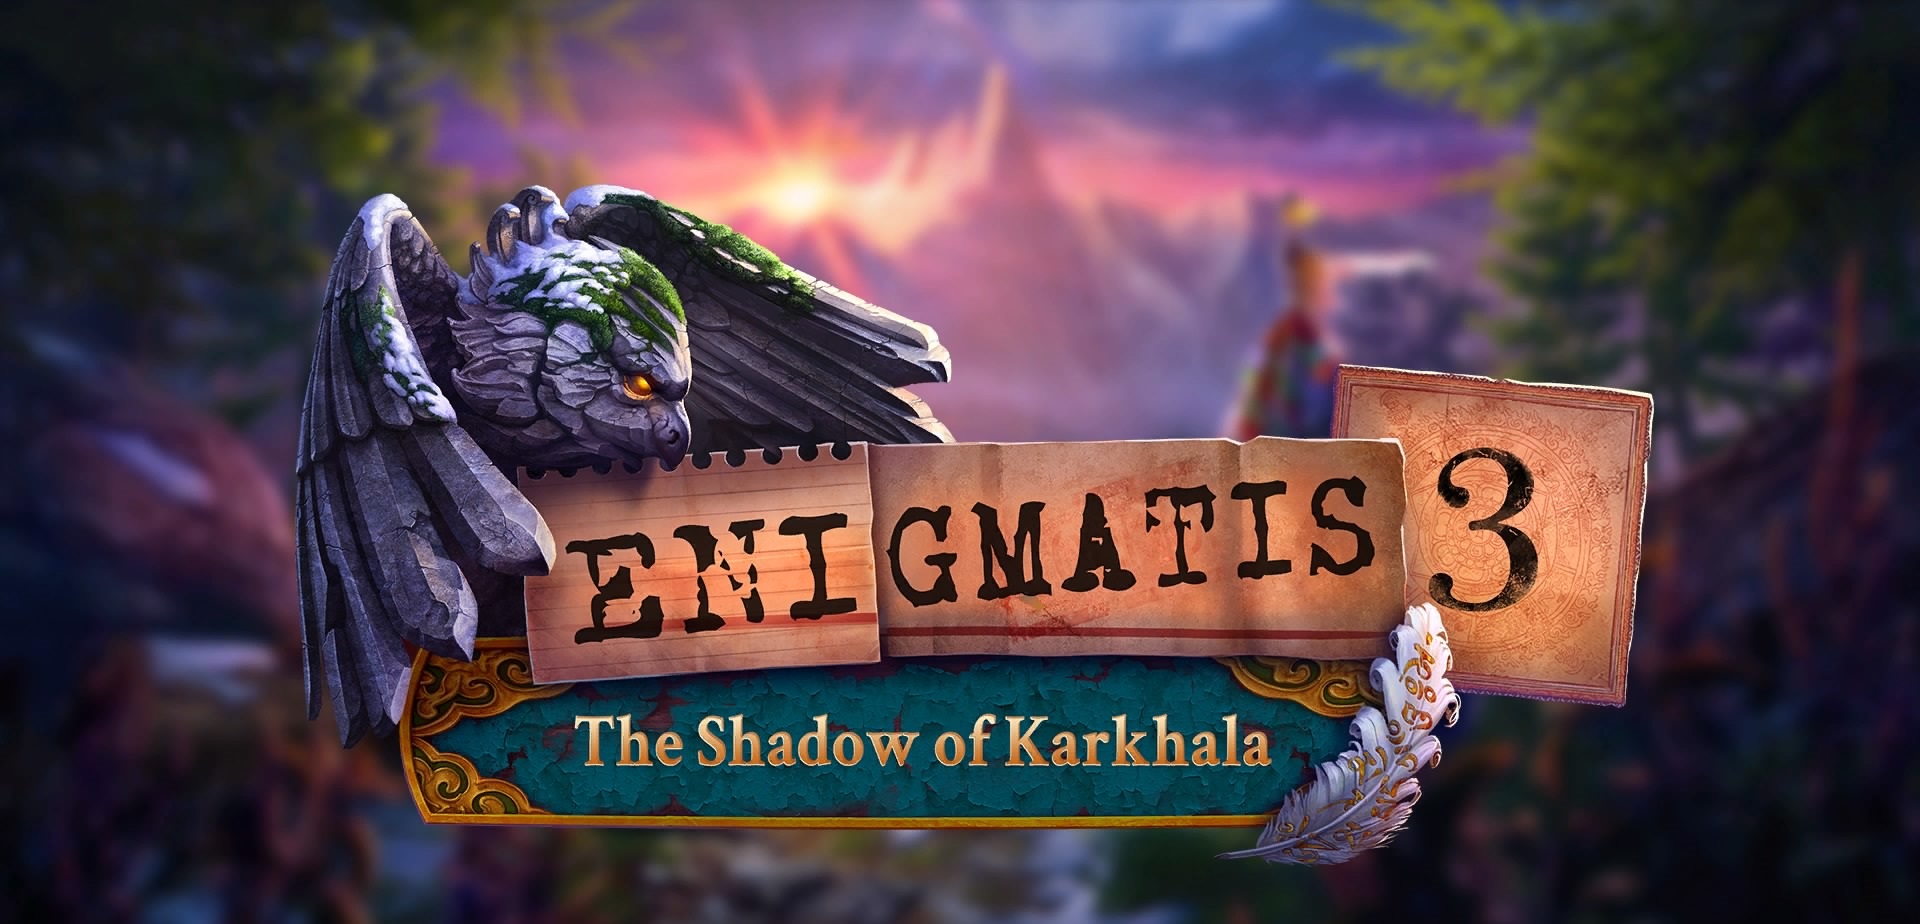 enigmatis-3-the-shadow-of-karkhala-free-download-gametrex